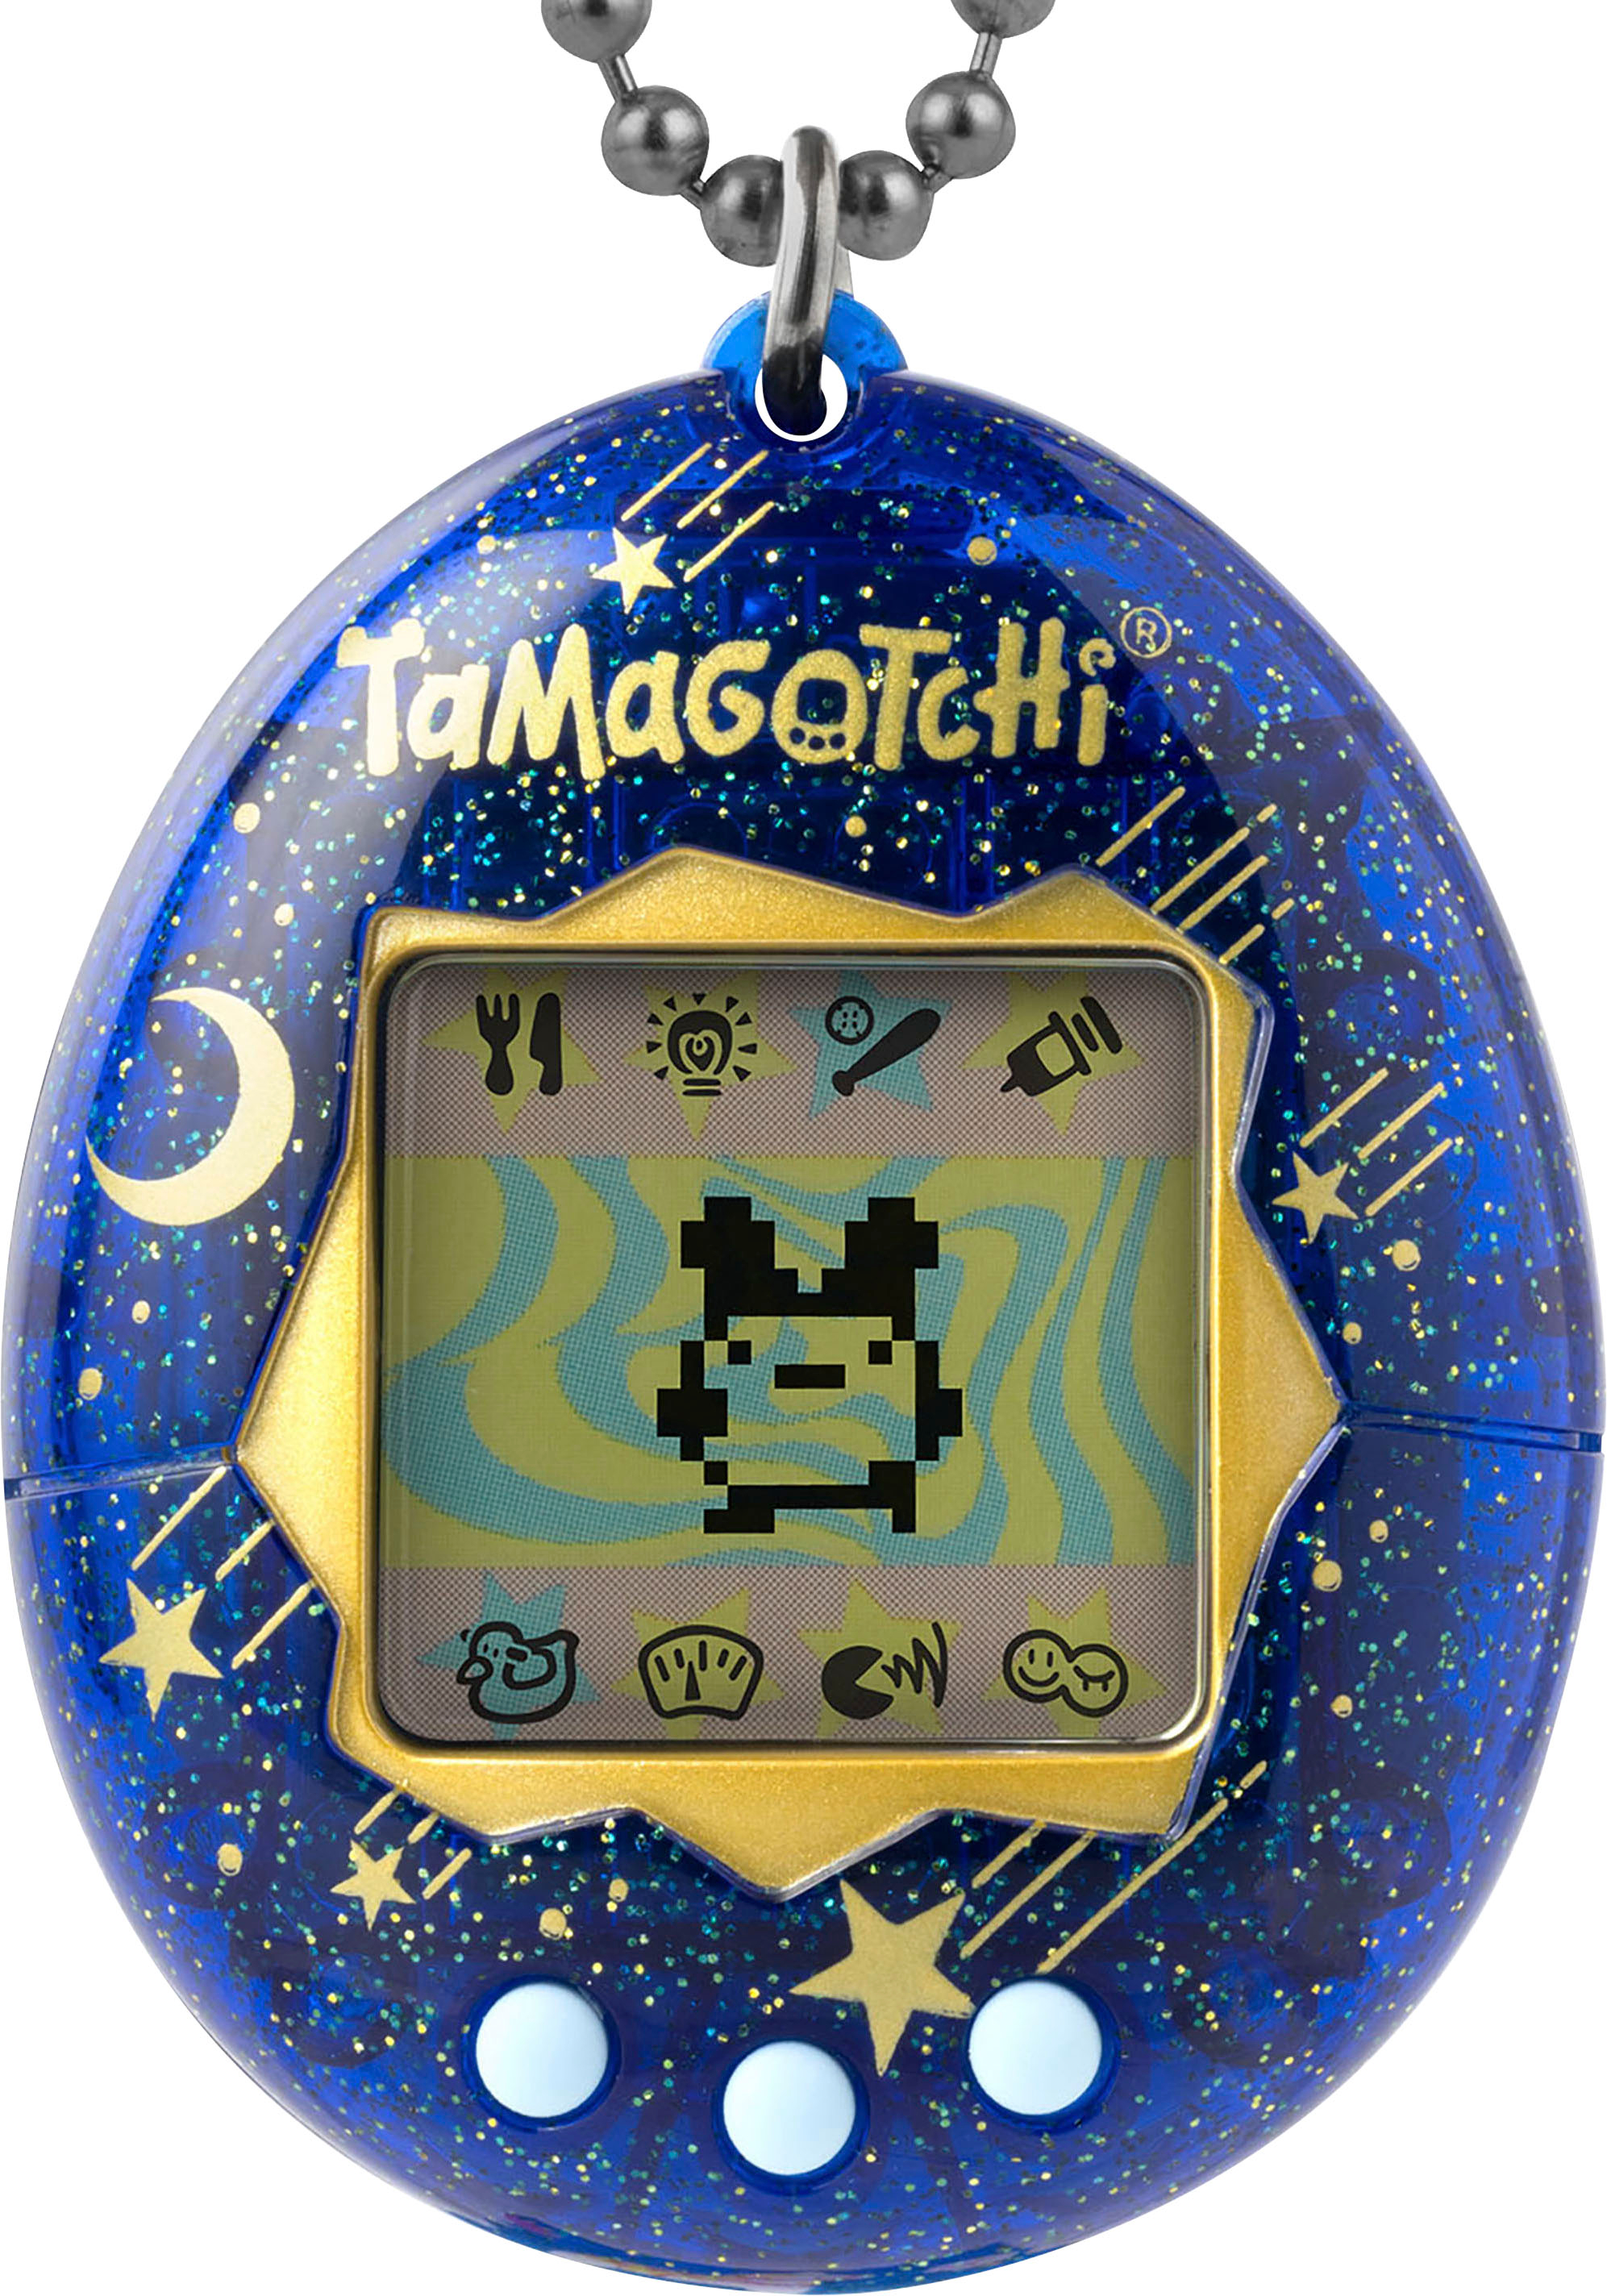 Tamagotchi - Original Tamagotchi - Pink Glitter